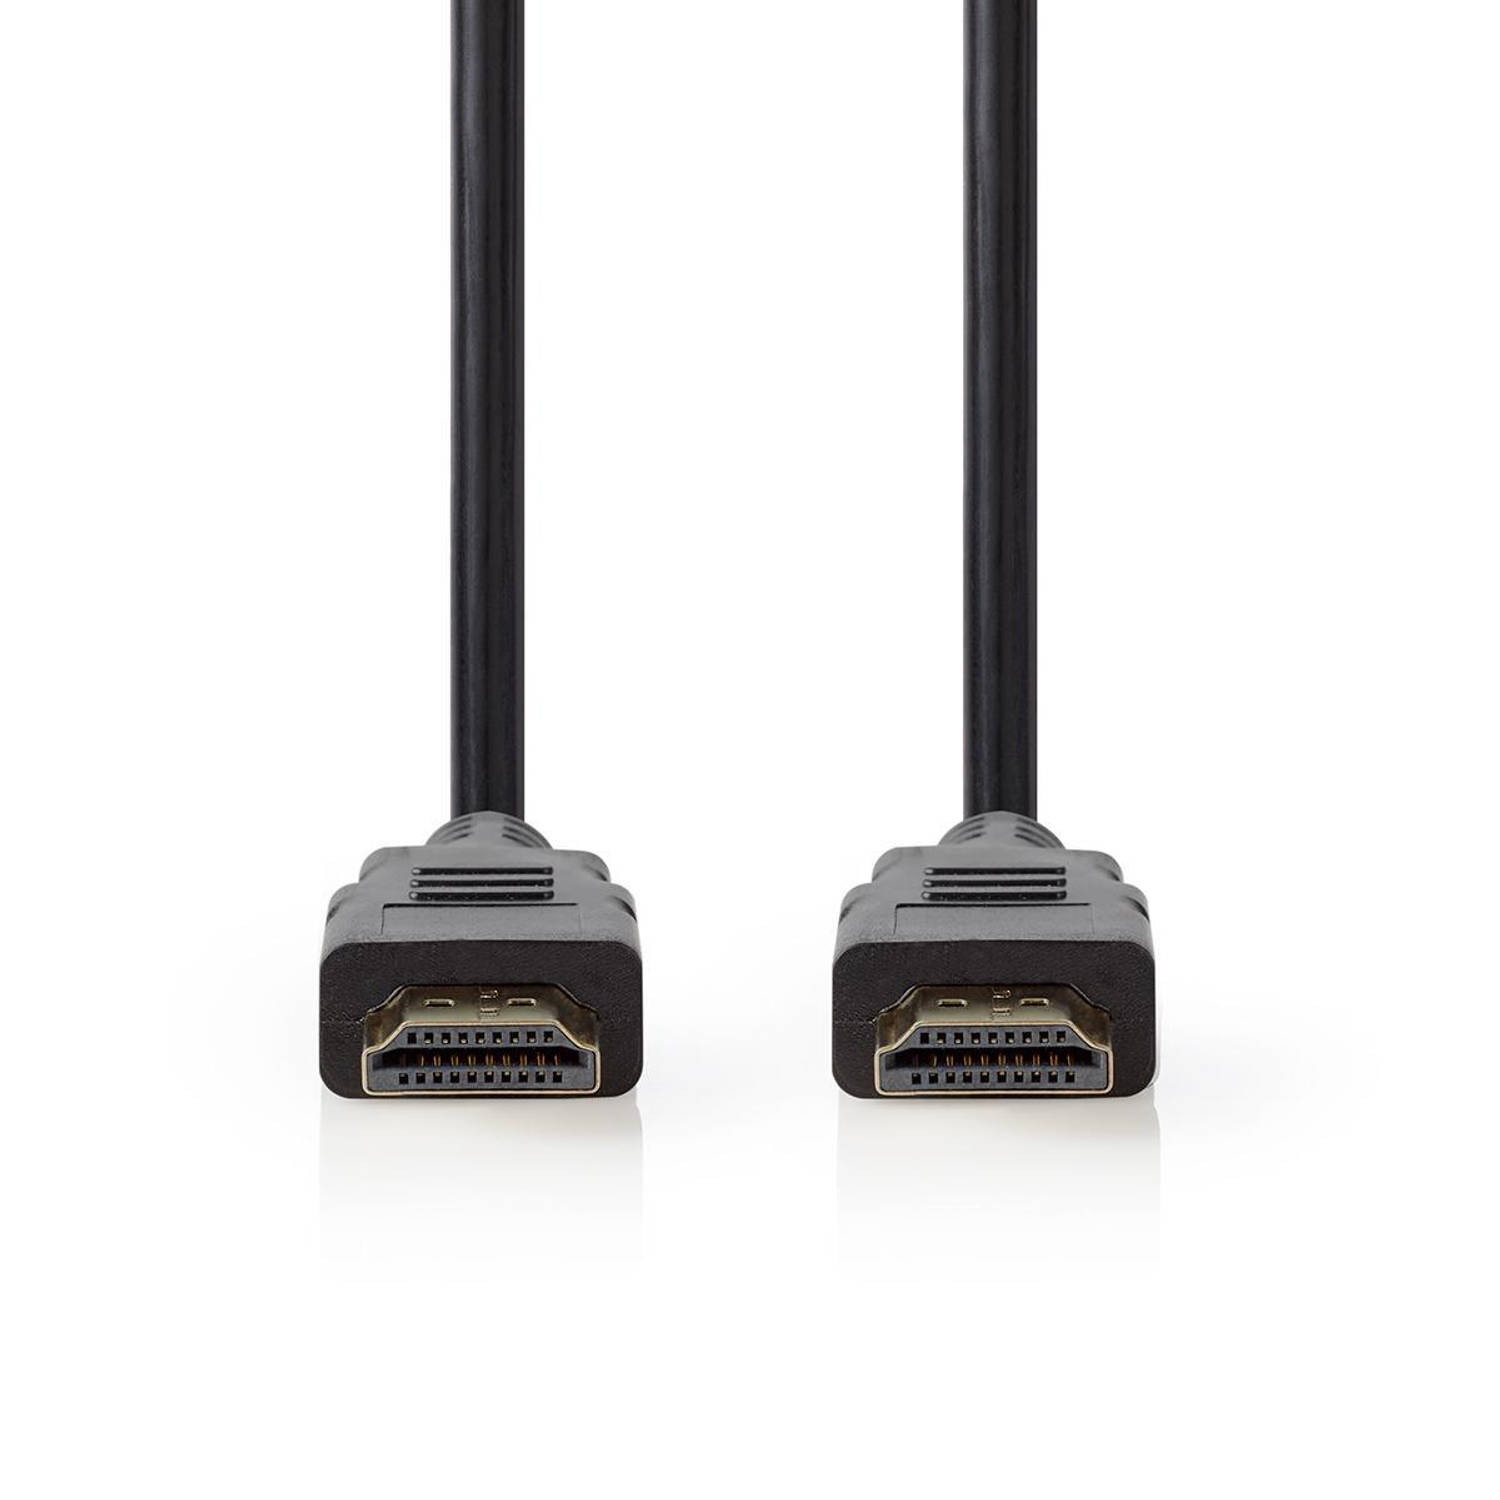 Nedis Premium High Speed ??HDMI-Kabel met Ethernet - CVGP34050BK20